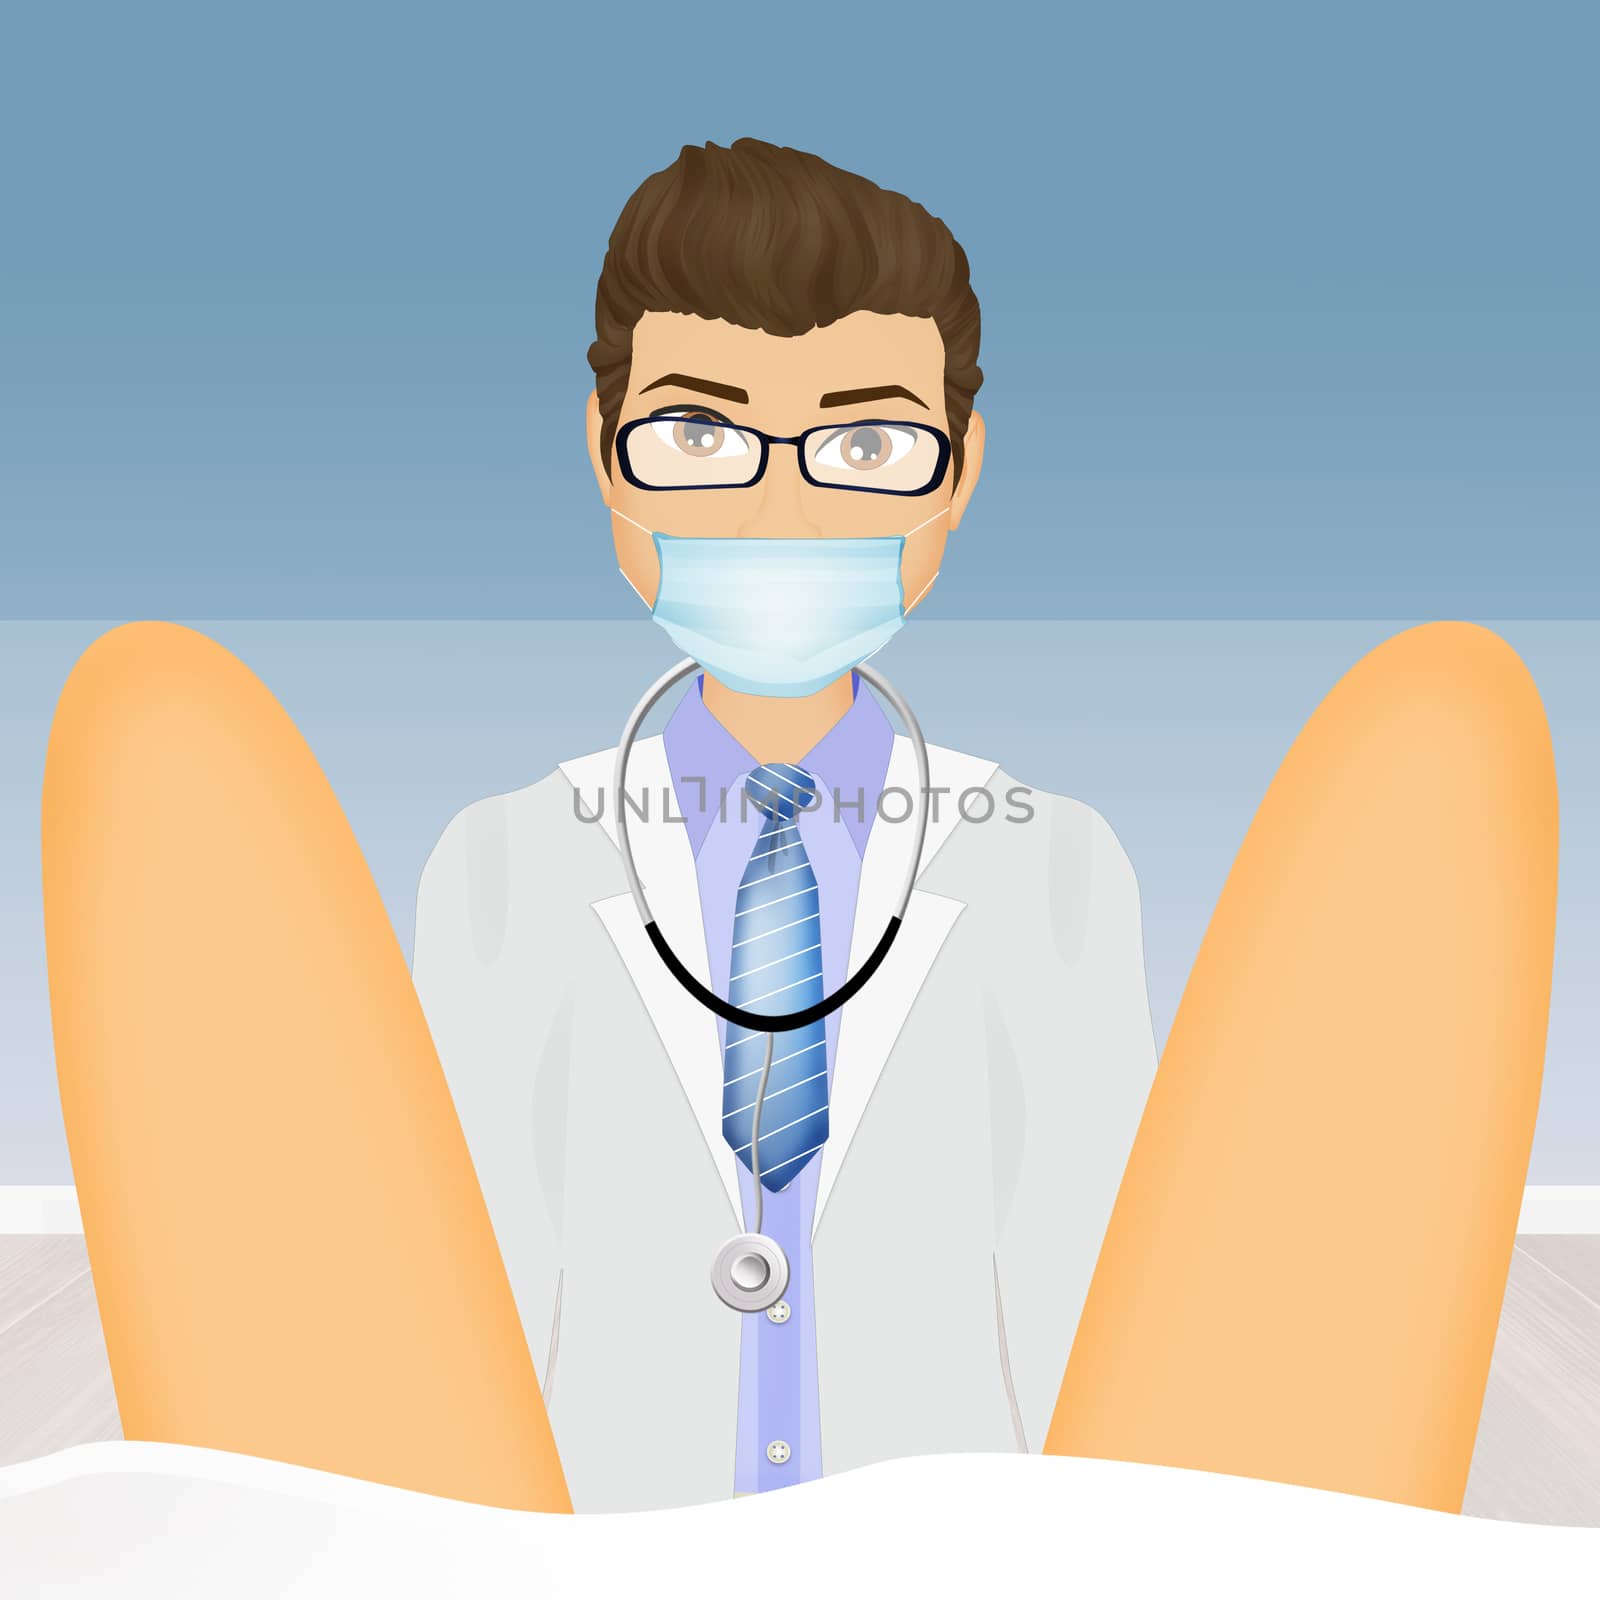 illustration of gynecological examination